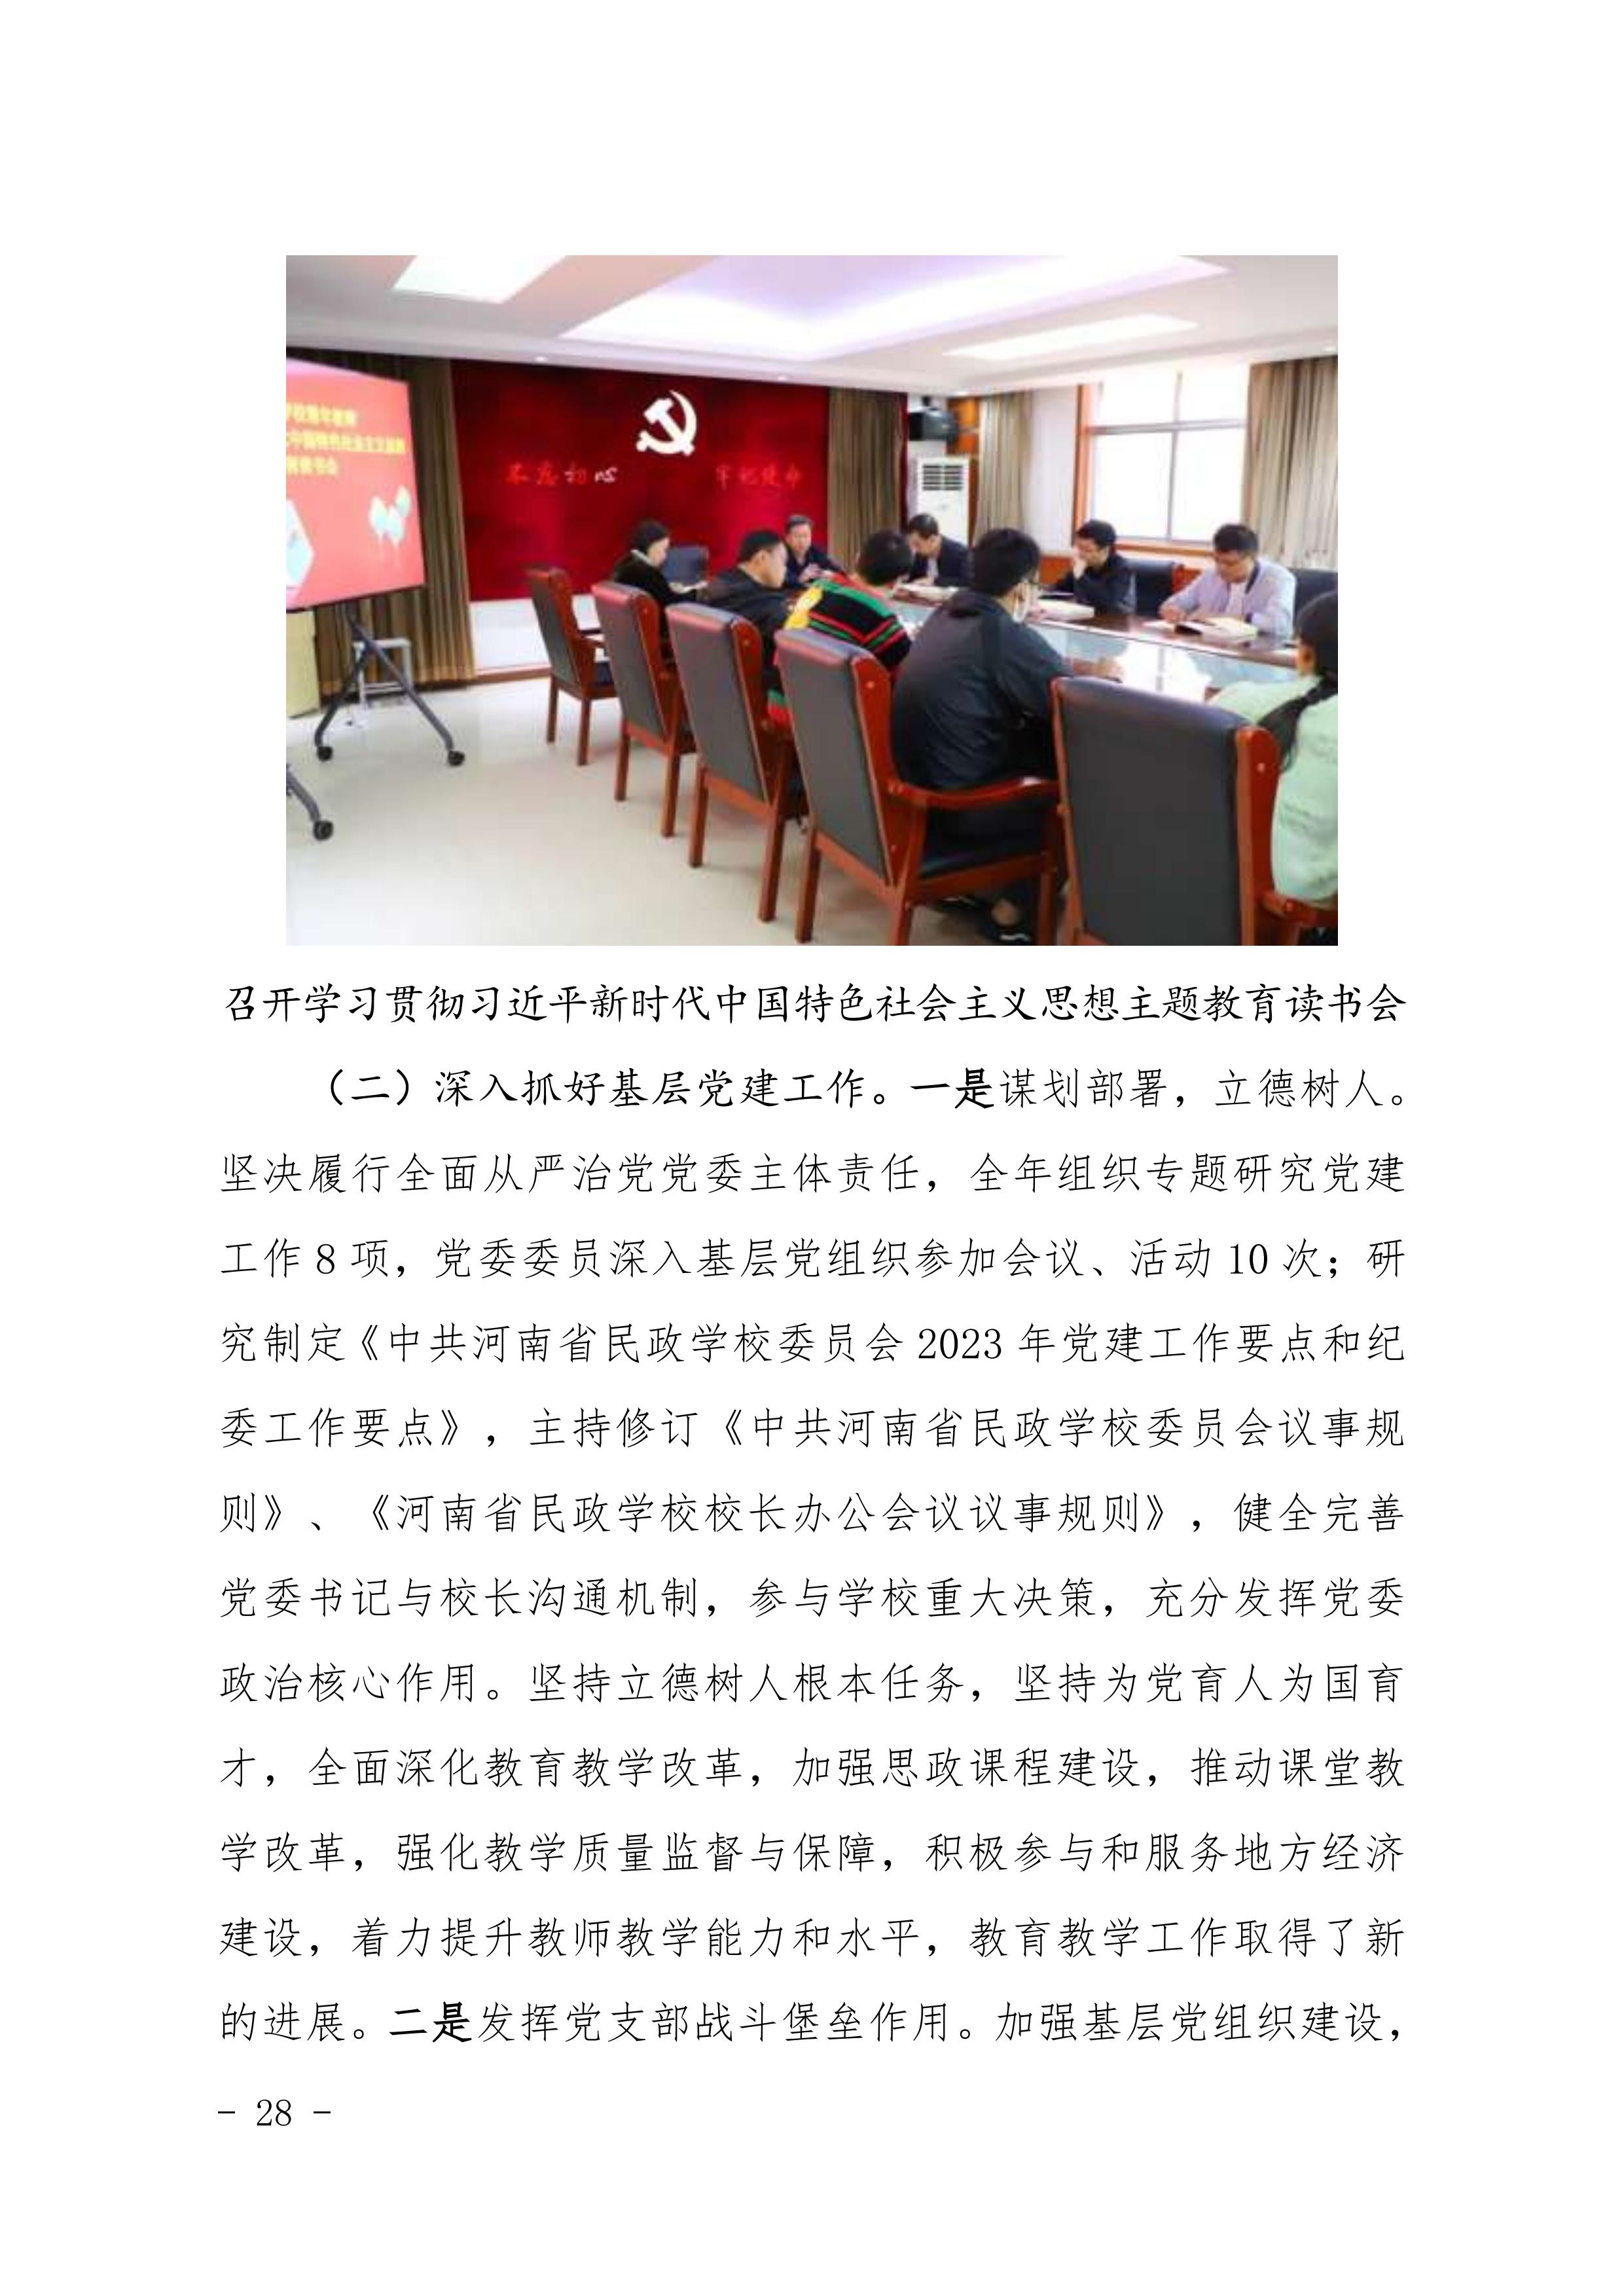 河南省民政学校职业教育质量报告（2023年度）发布版_31.jpg